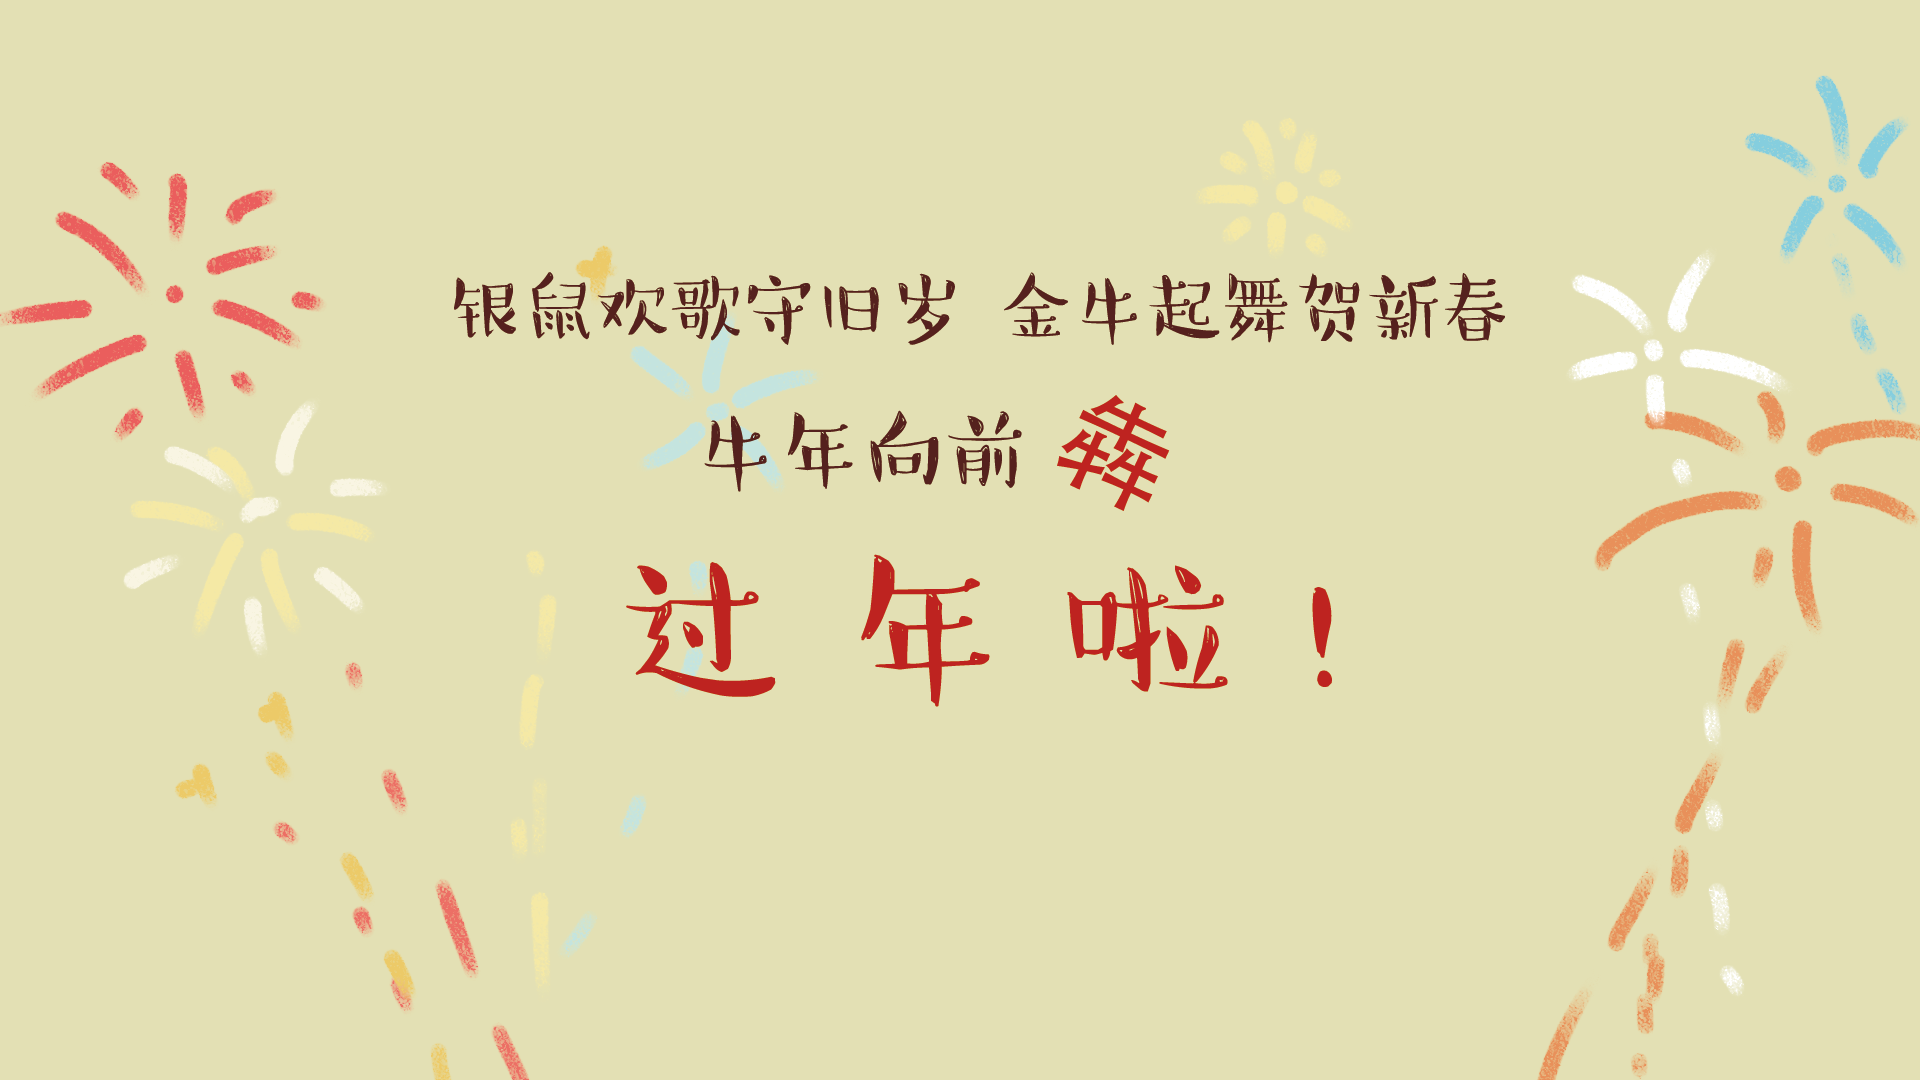 【网络中国节·春节】牛牛牛牪牪牪犇犇犇…2021牛年向前“犇”